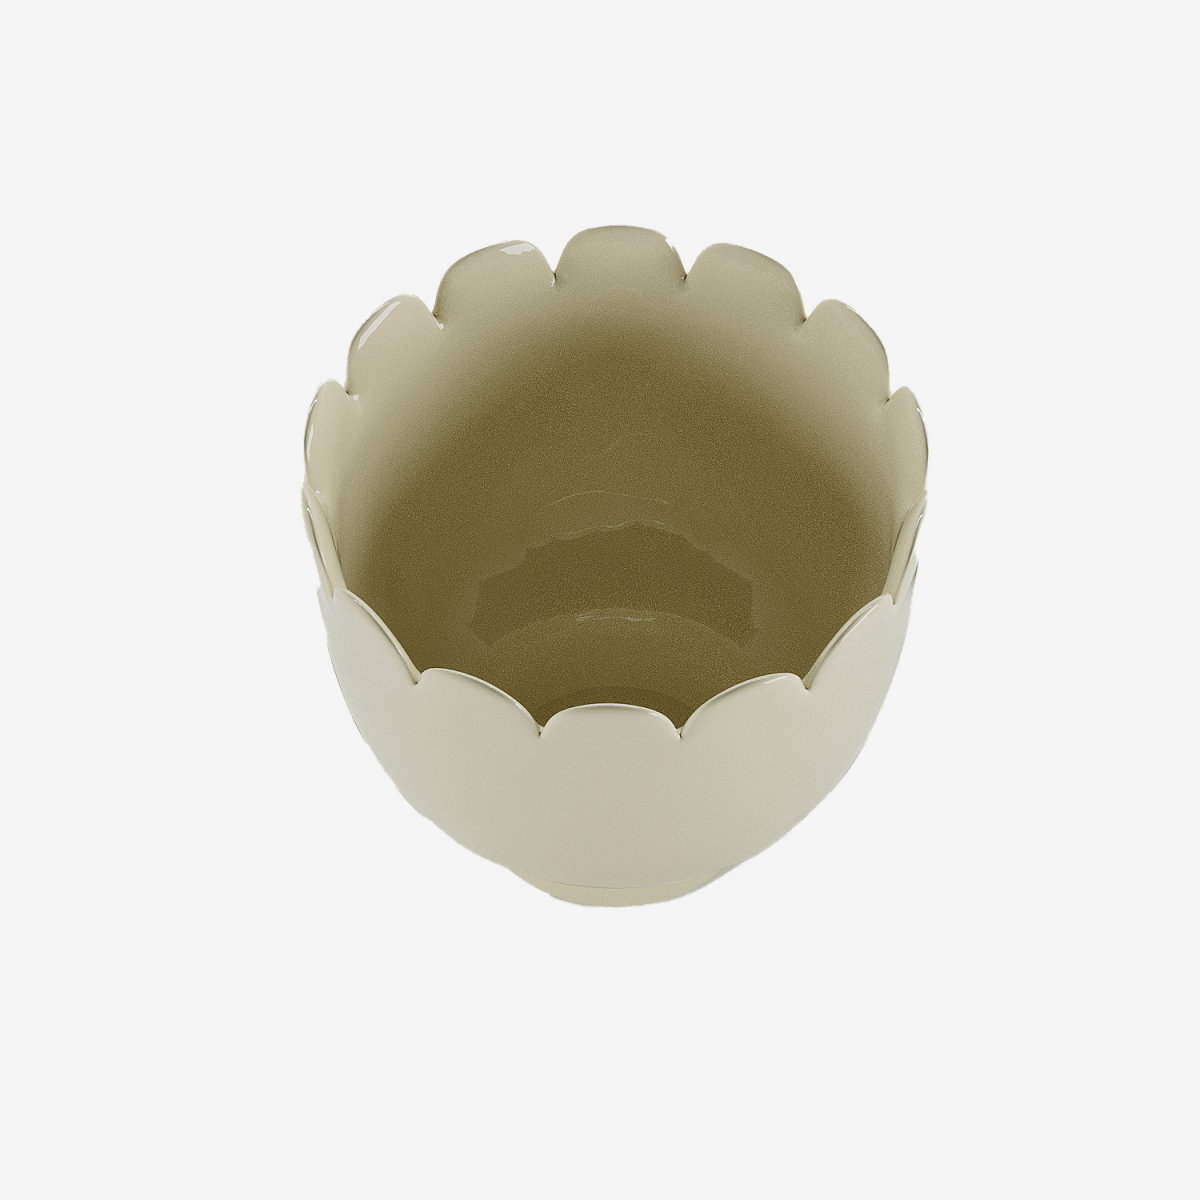  Potiron Paris, meubles déco design - Petit vase forme tulipe en céramique crème Marceau